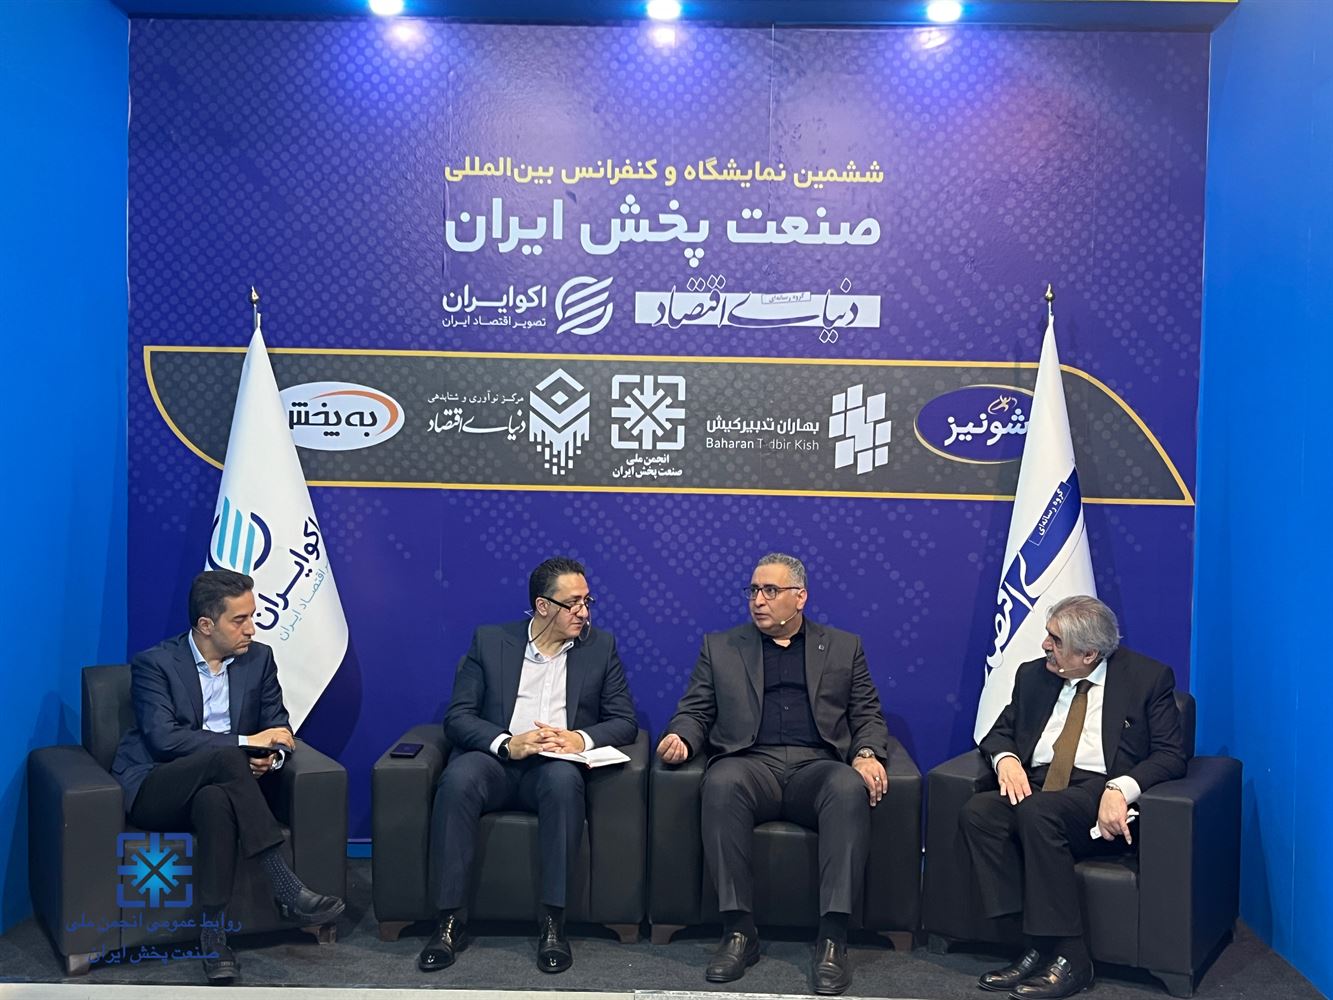 نشست خبری دنیای اقتصاد در ششمین نمایشگاه و کنفرانس بین المللی صنعت پخش ایران